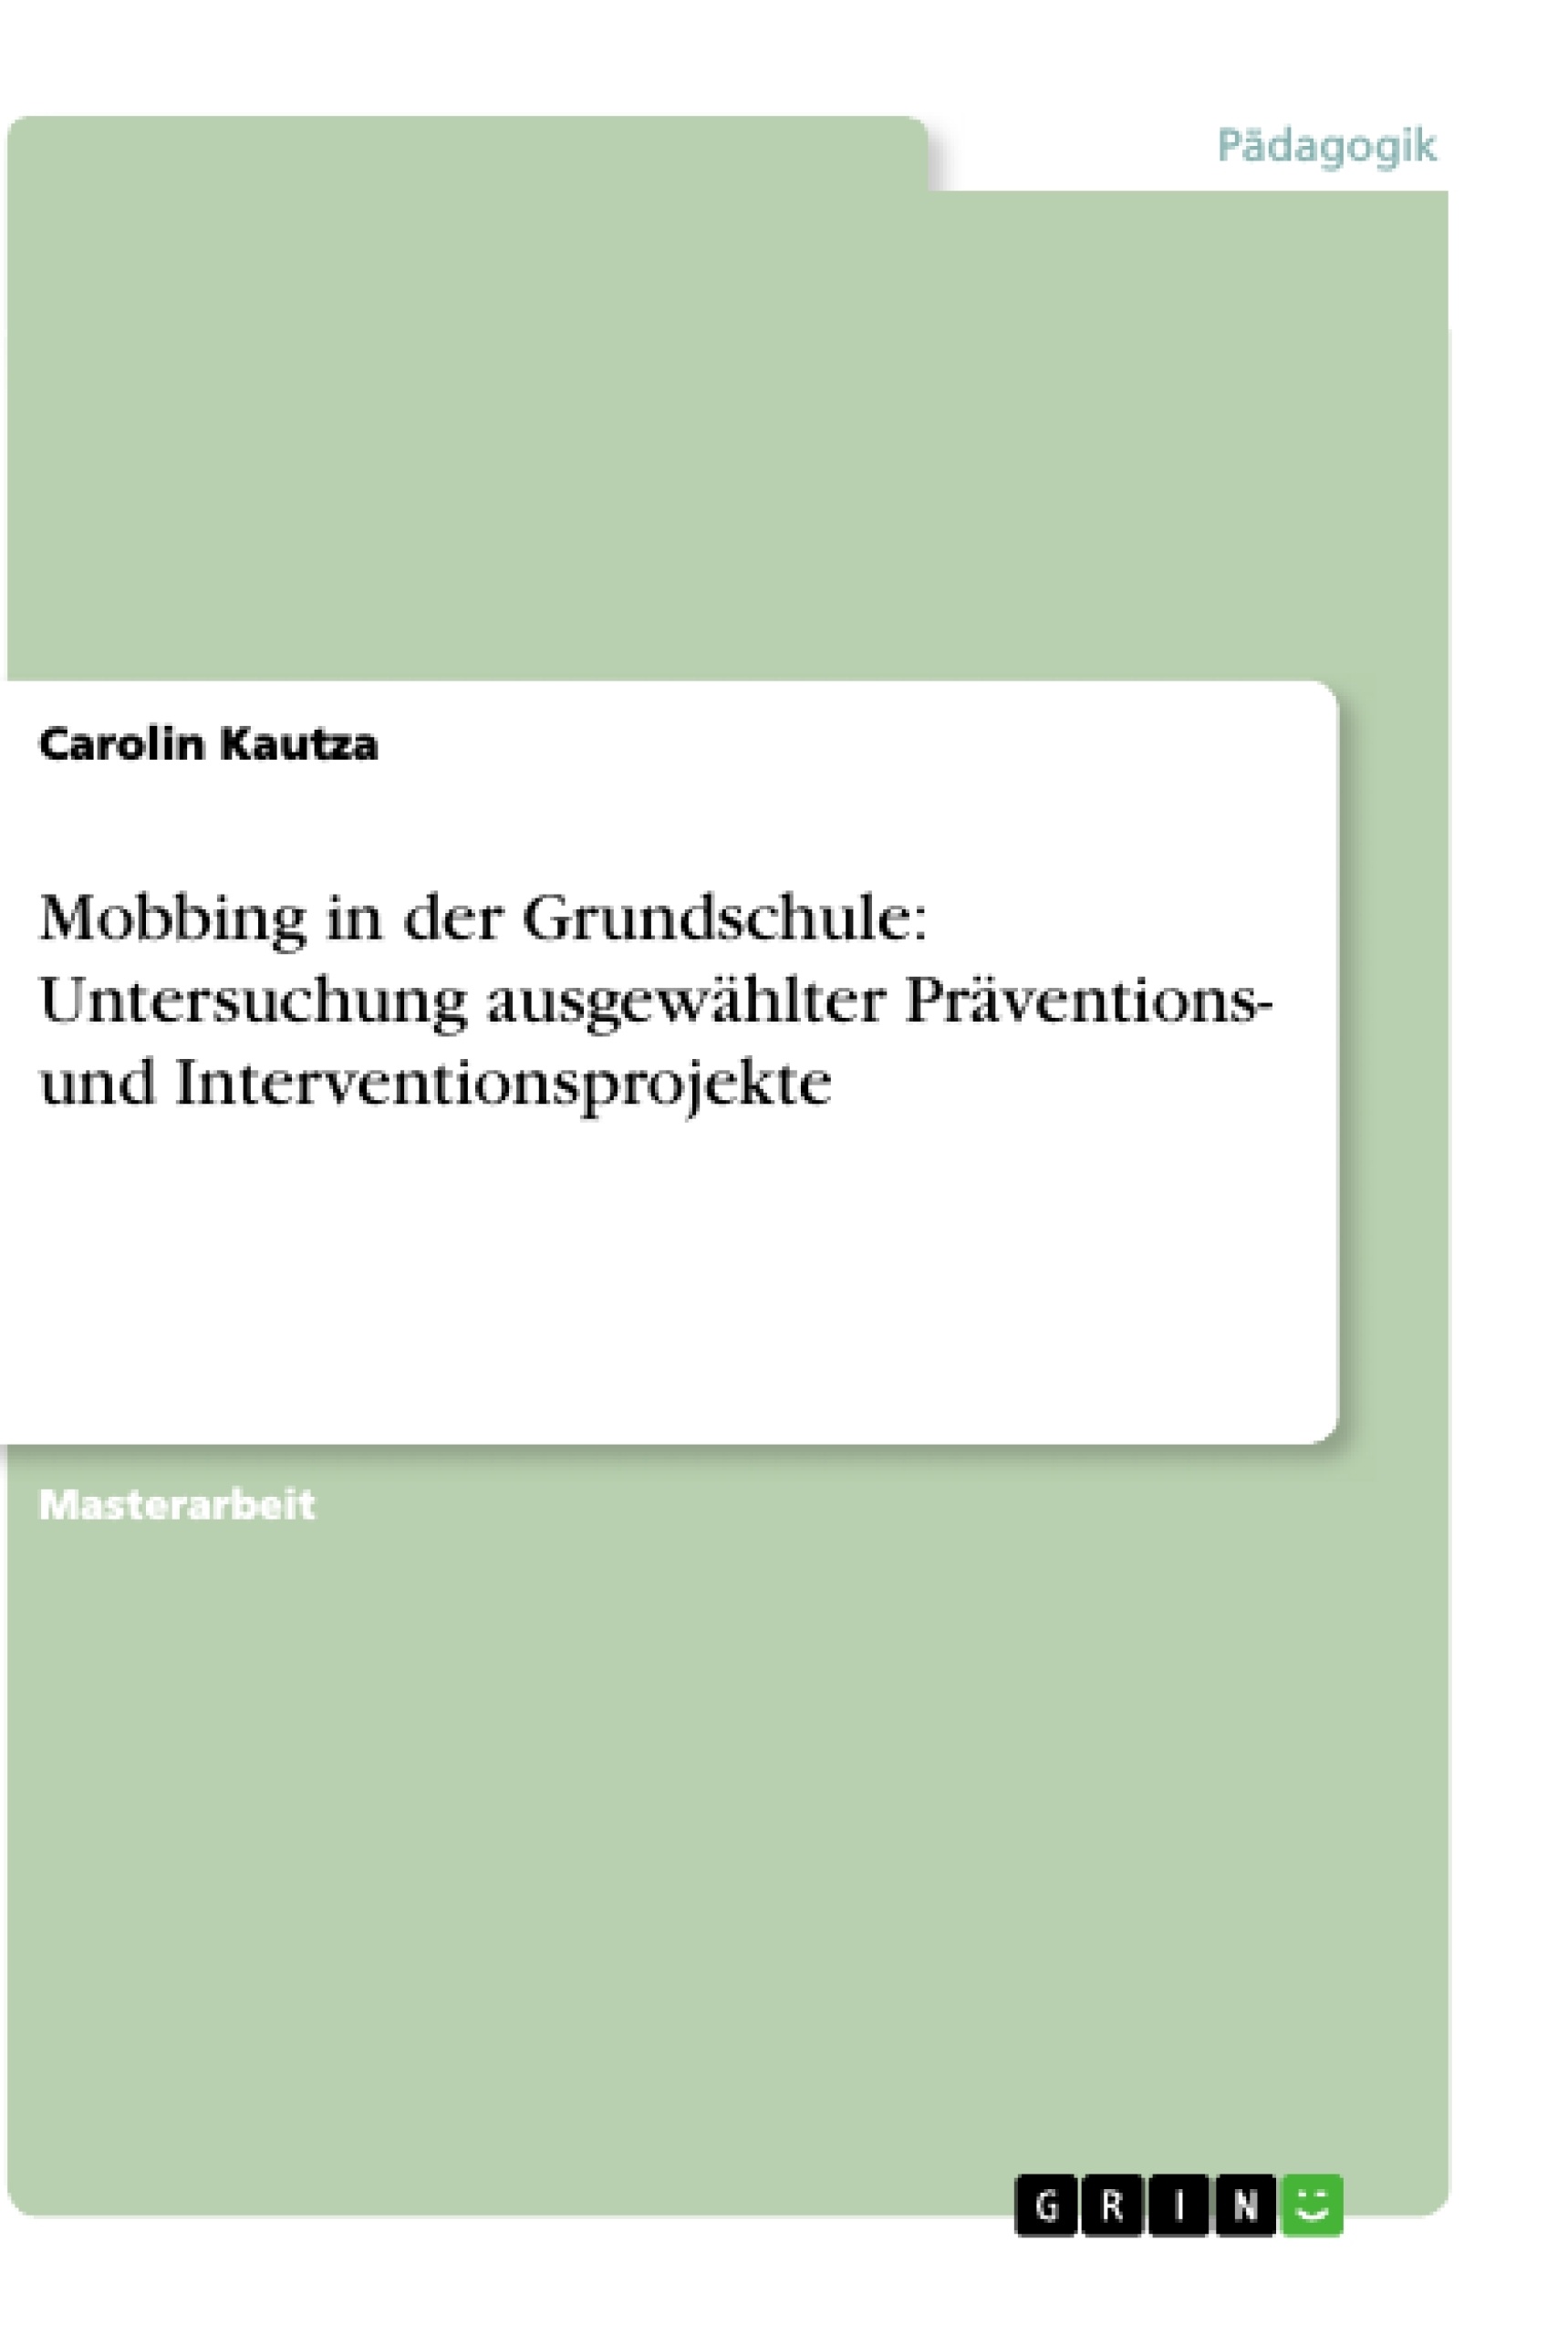 Title: Mobbing in der Grundschule: Untersuchung ausgewählter Präventions- und Interventionsprojekte